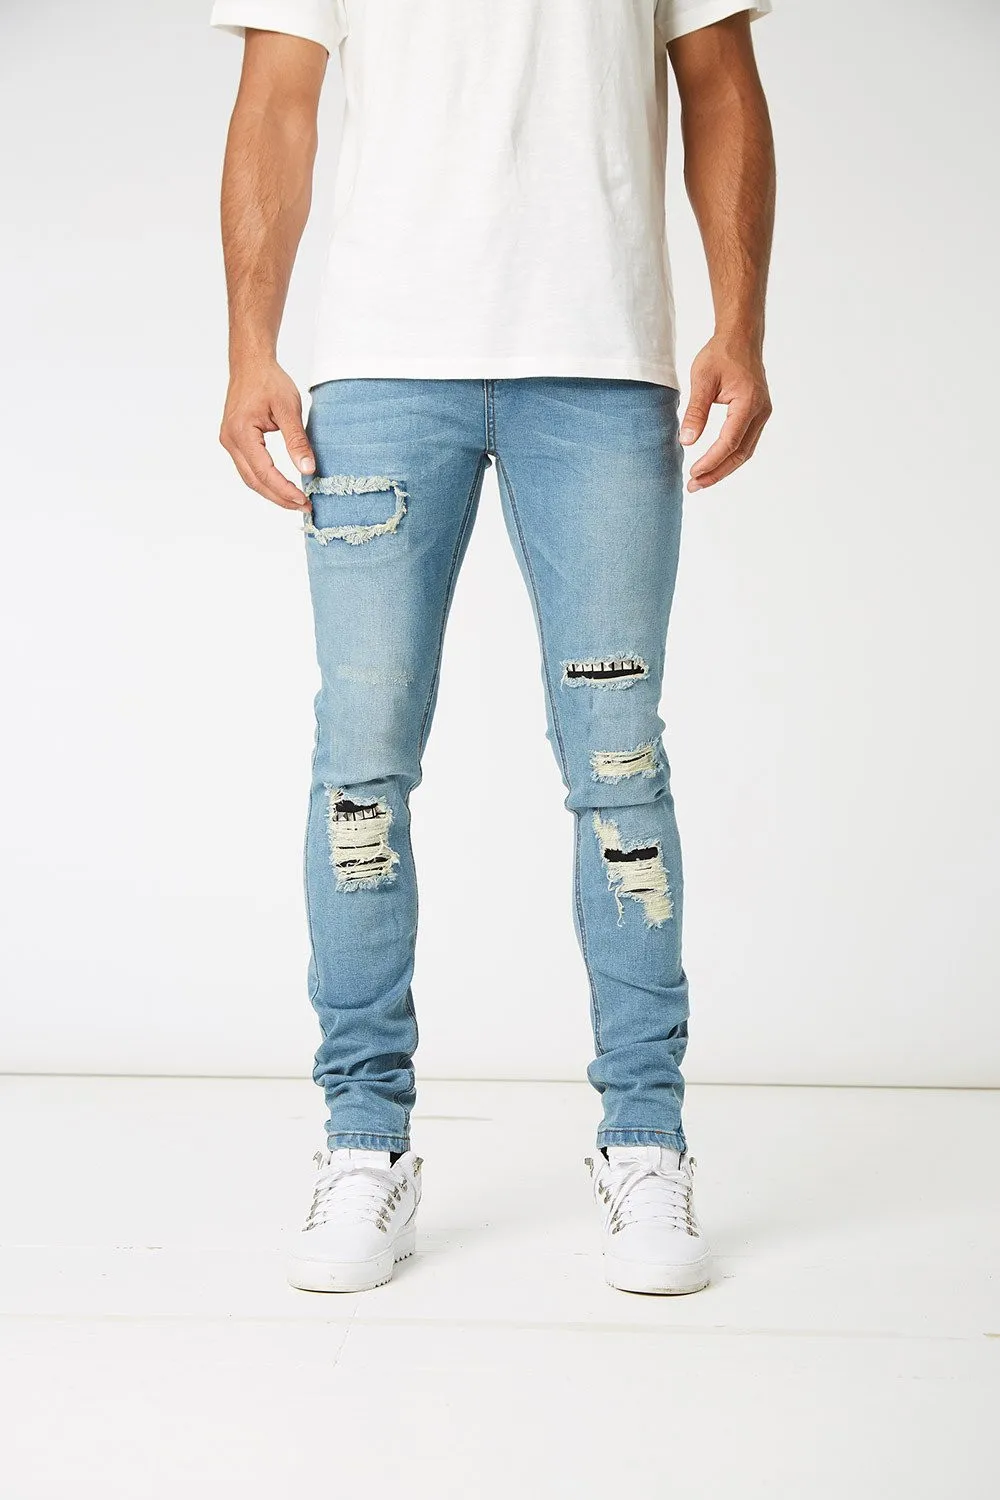 blue designer jeans